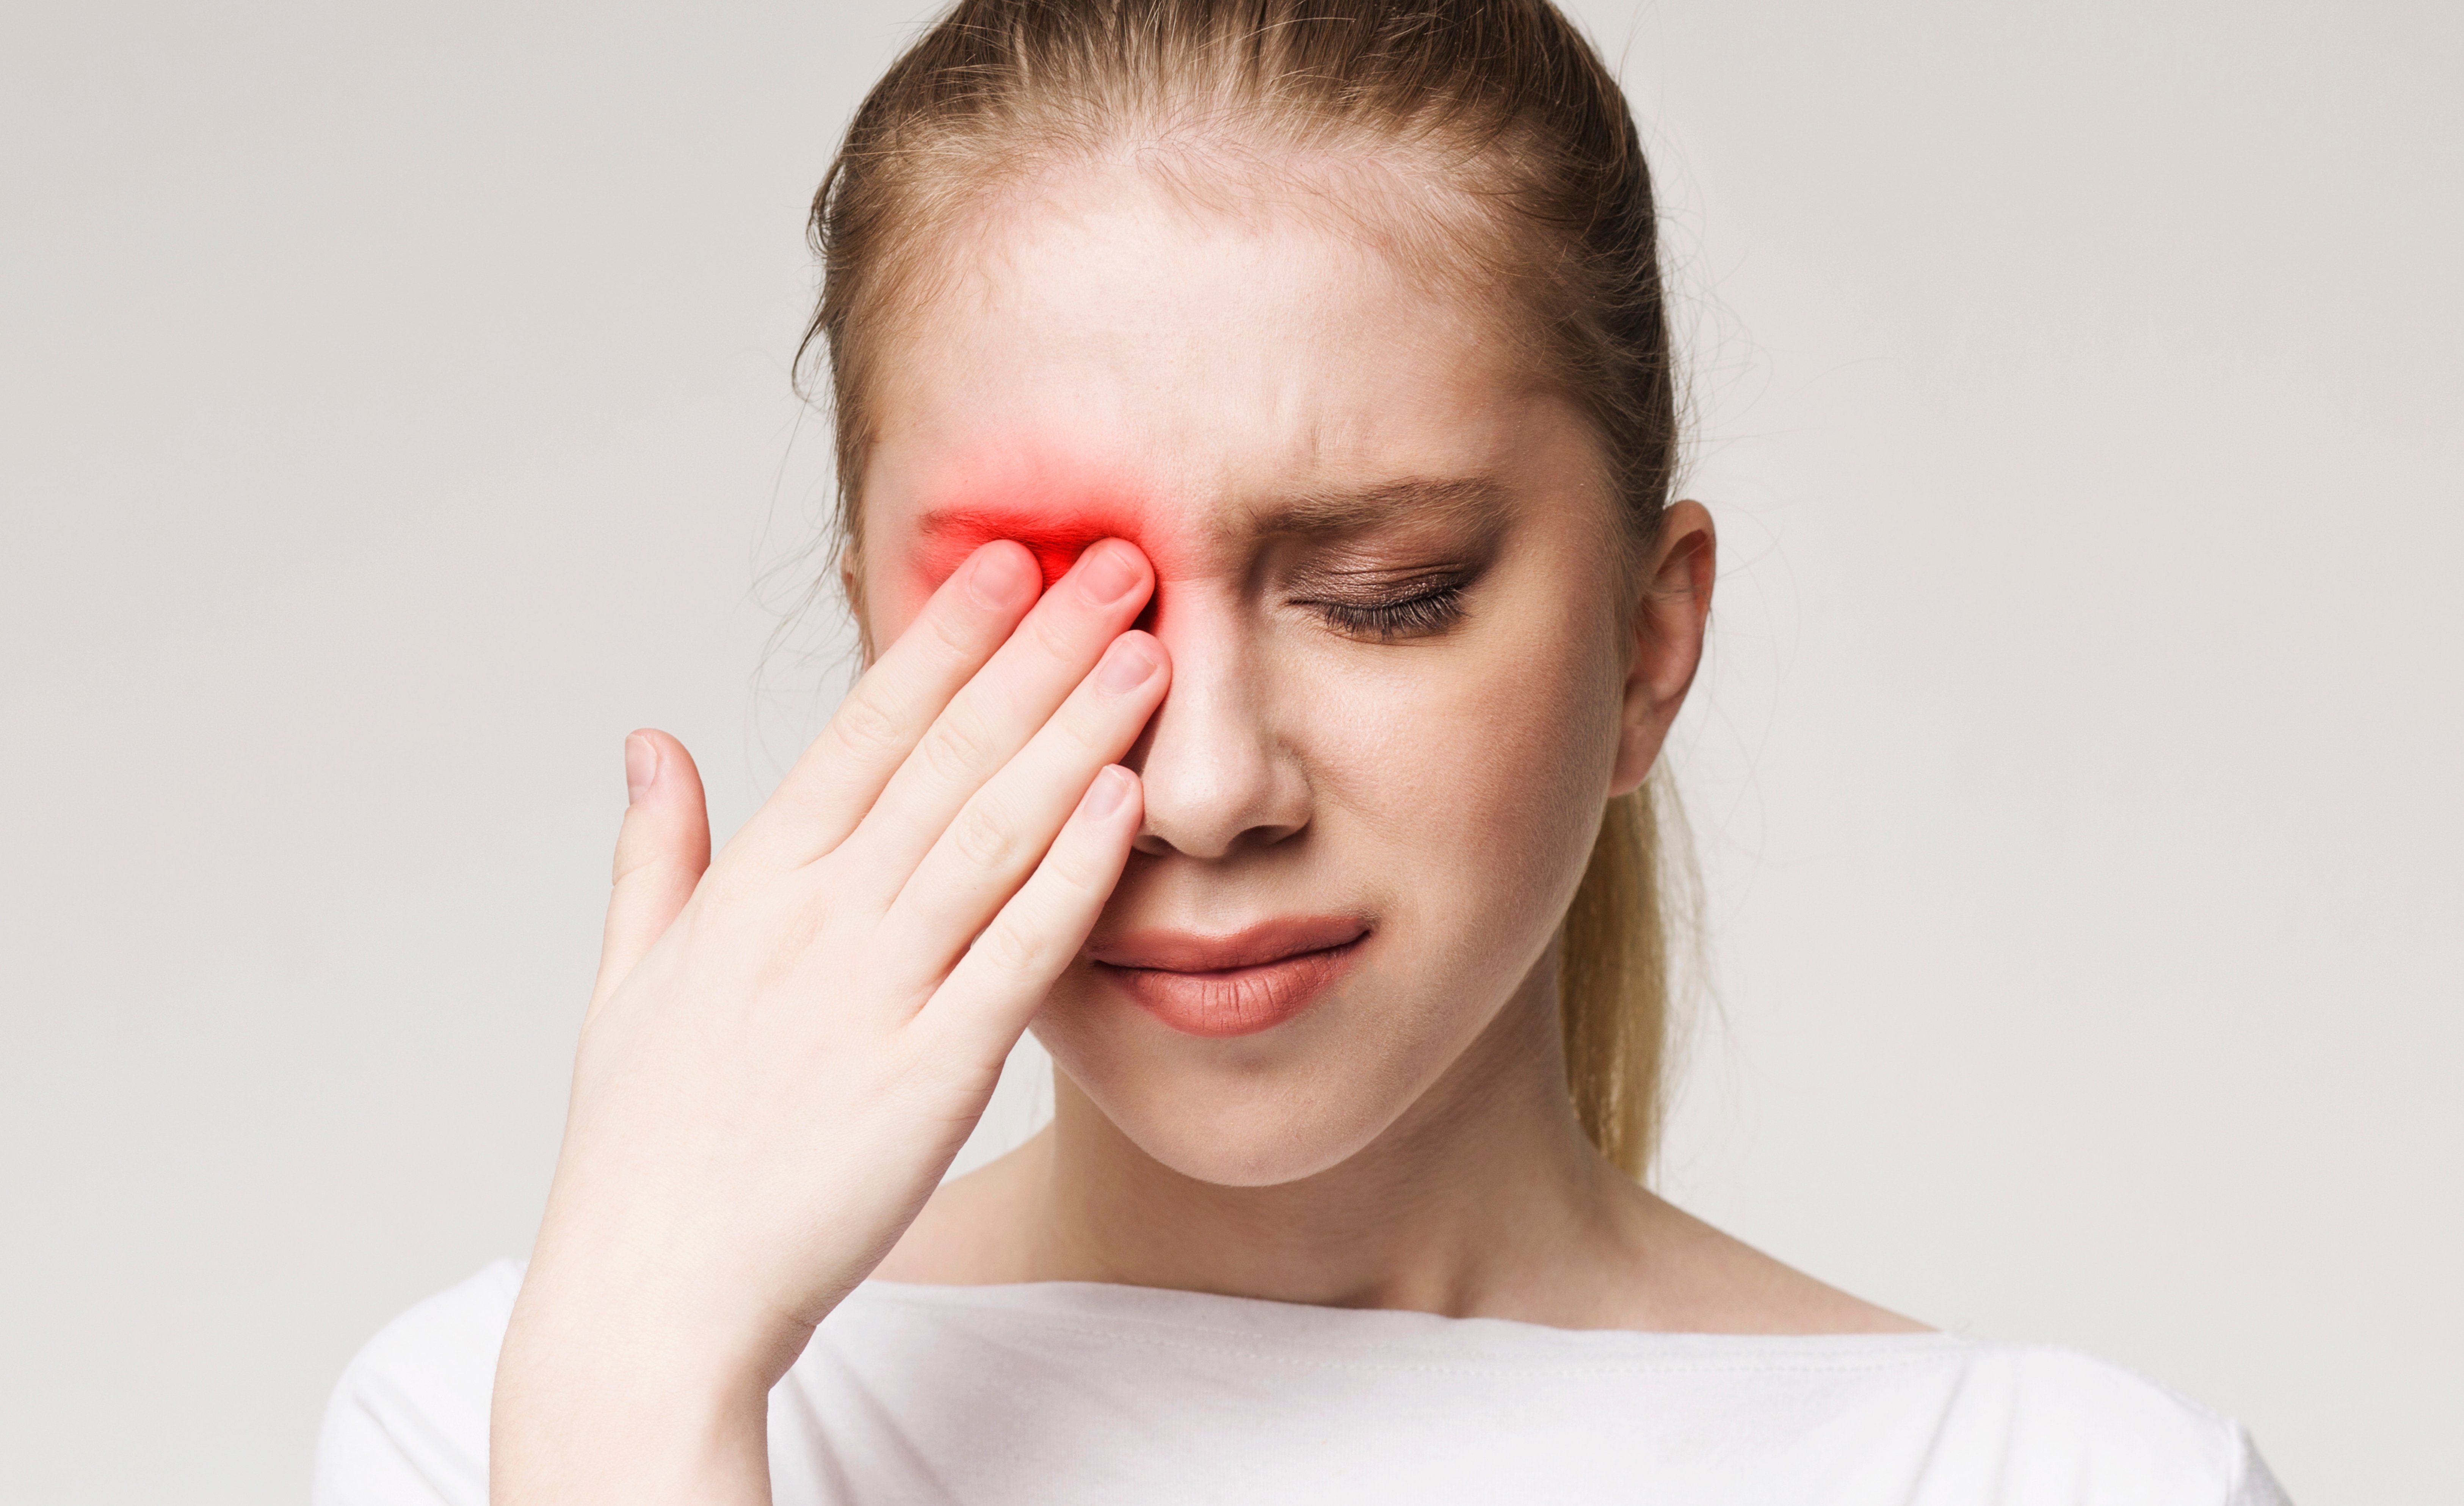 Common Eye Injuries/Emergencies